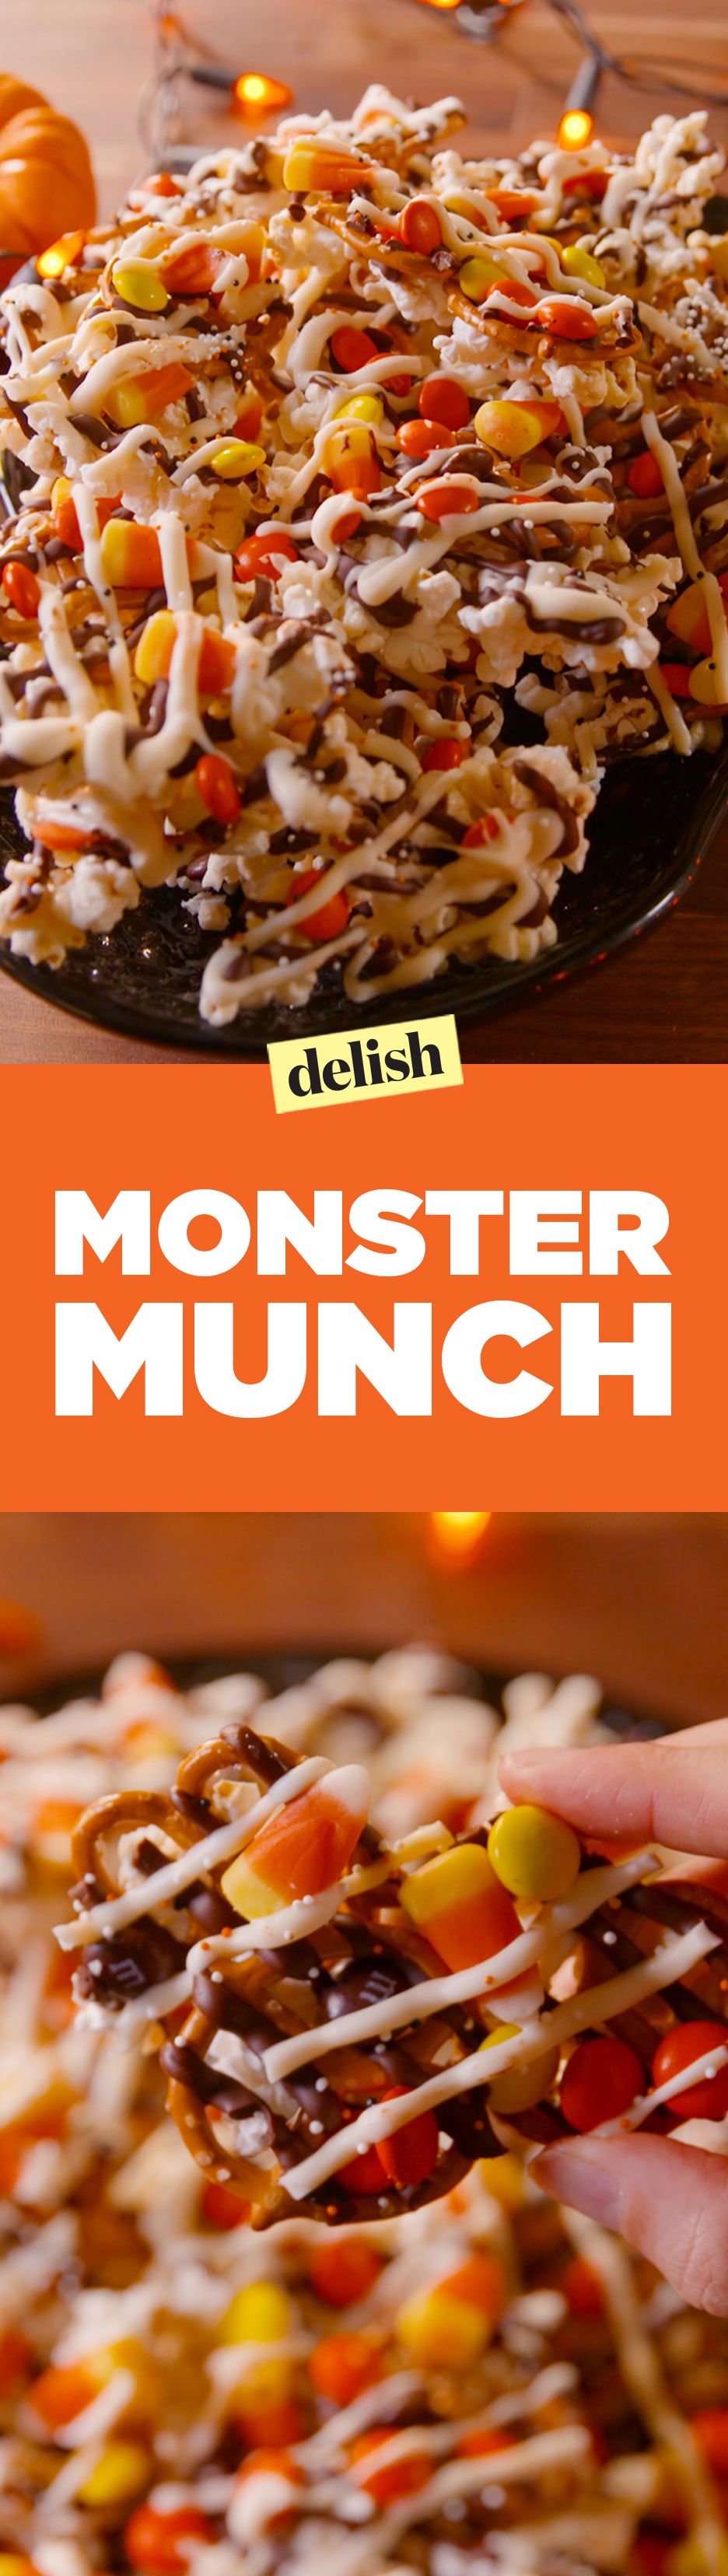 monster munch pinterest